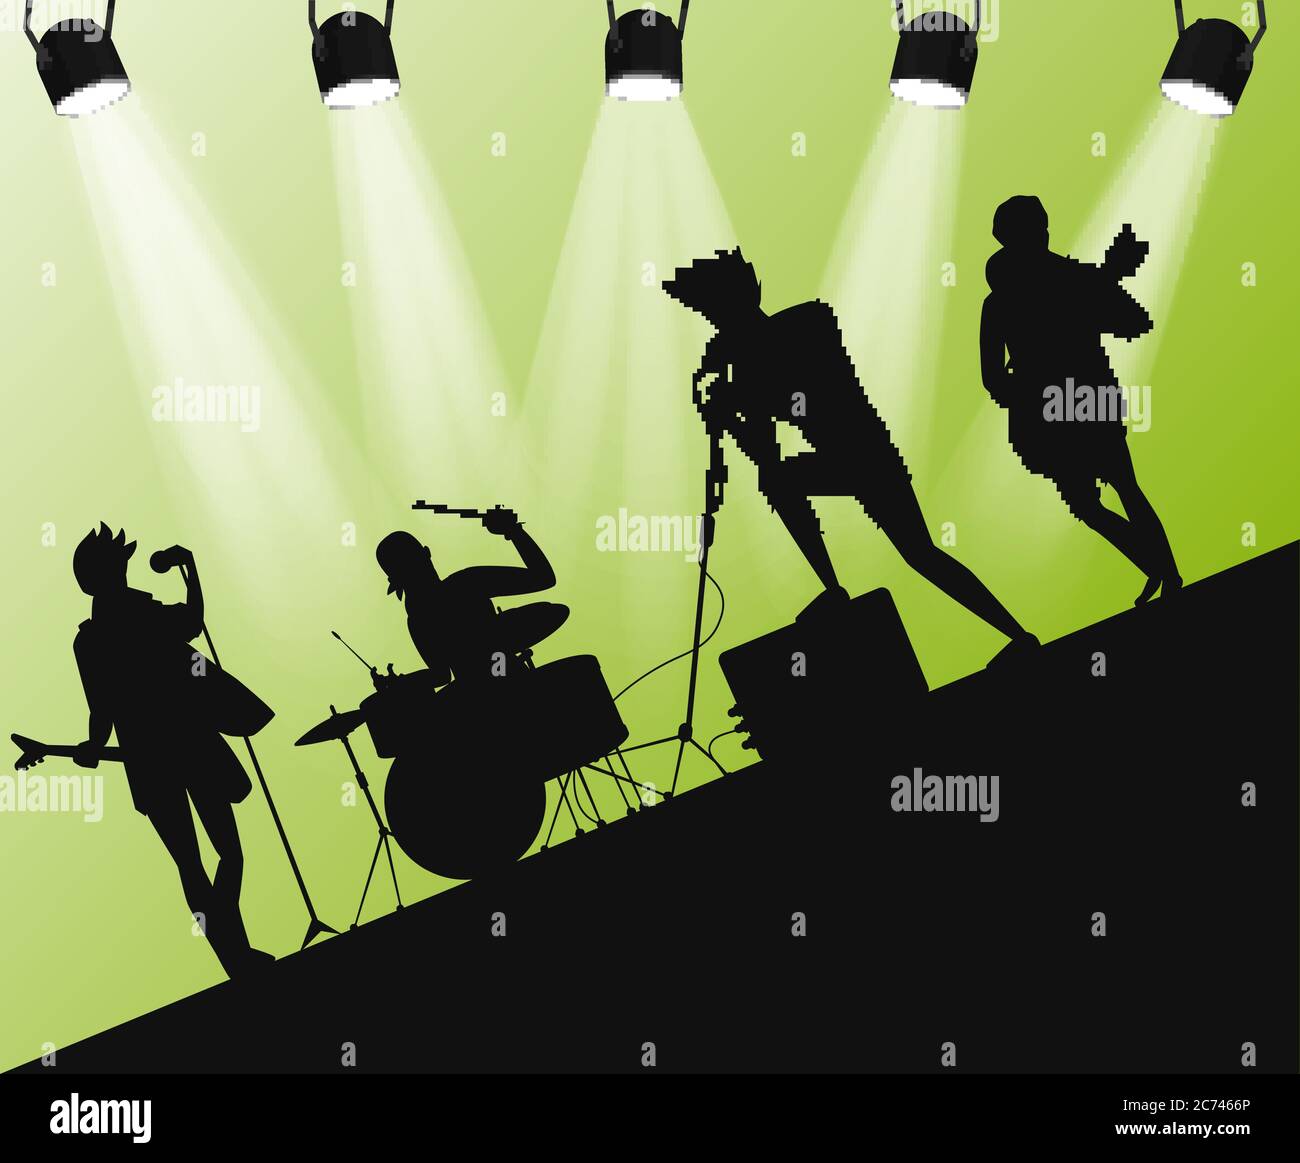 Silhouette du groupe Hard Rock sur scène. Angle d'action avec projecteurs Illustration de Vecteur